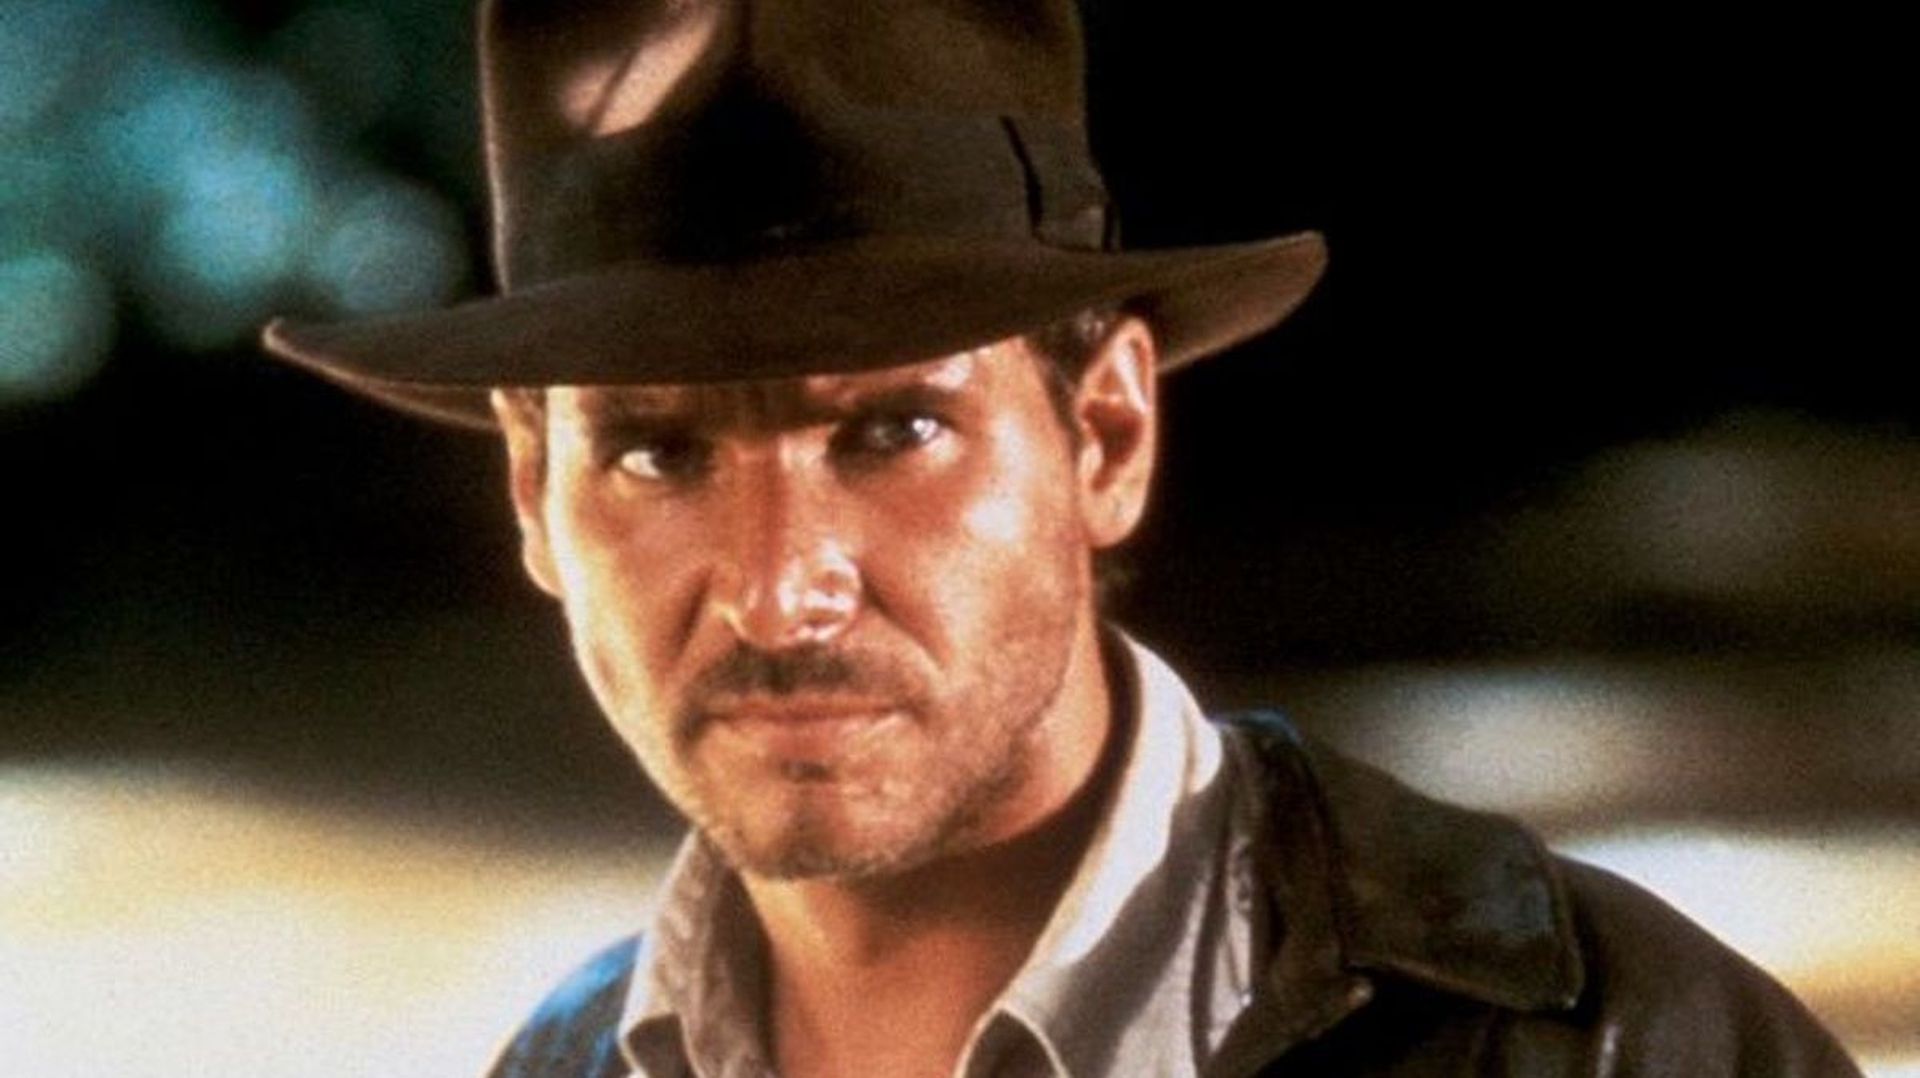 Le célèbre chapeau d'Indiana Jones est Andalou !